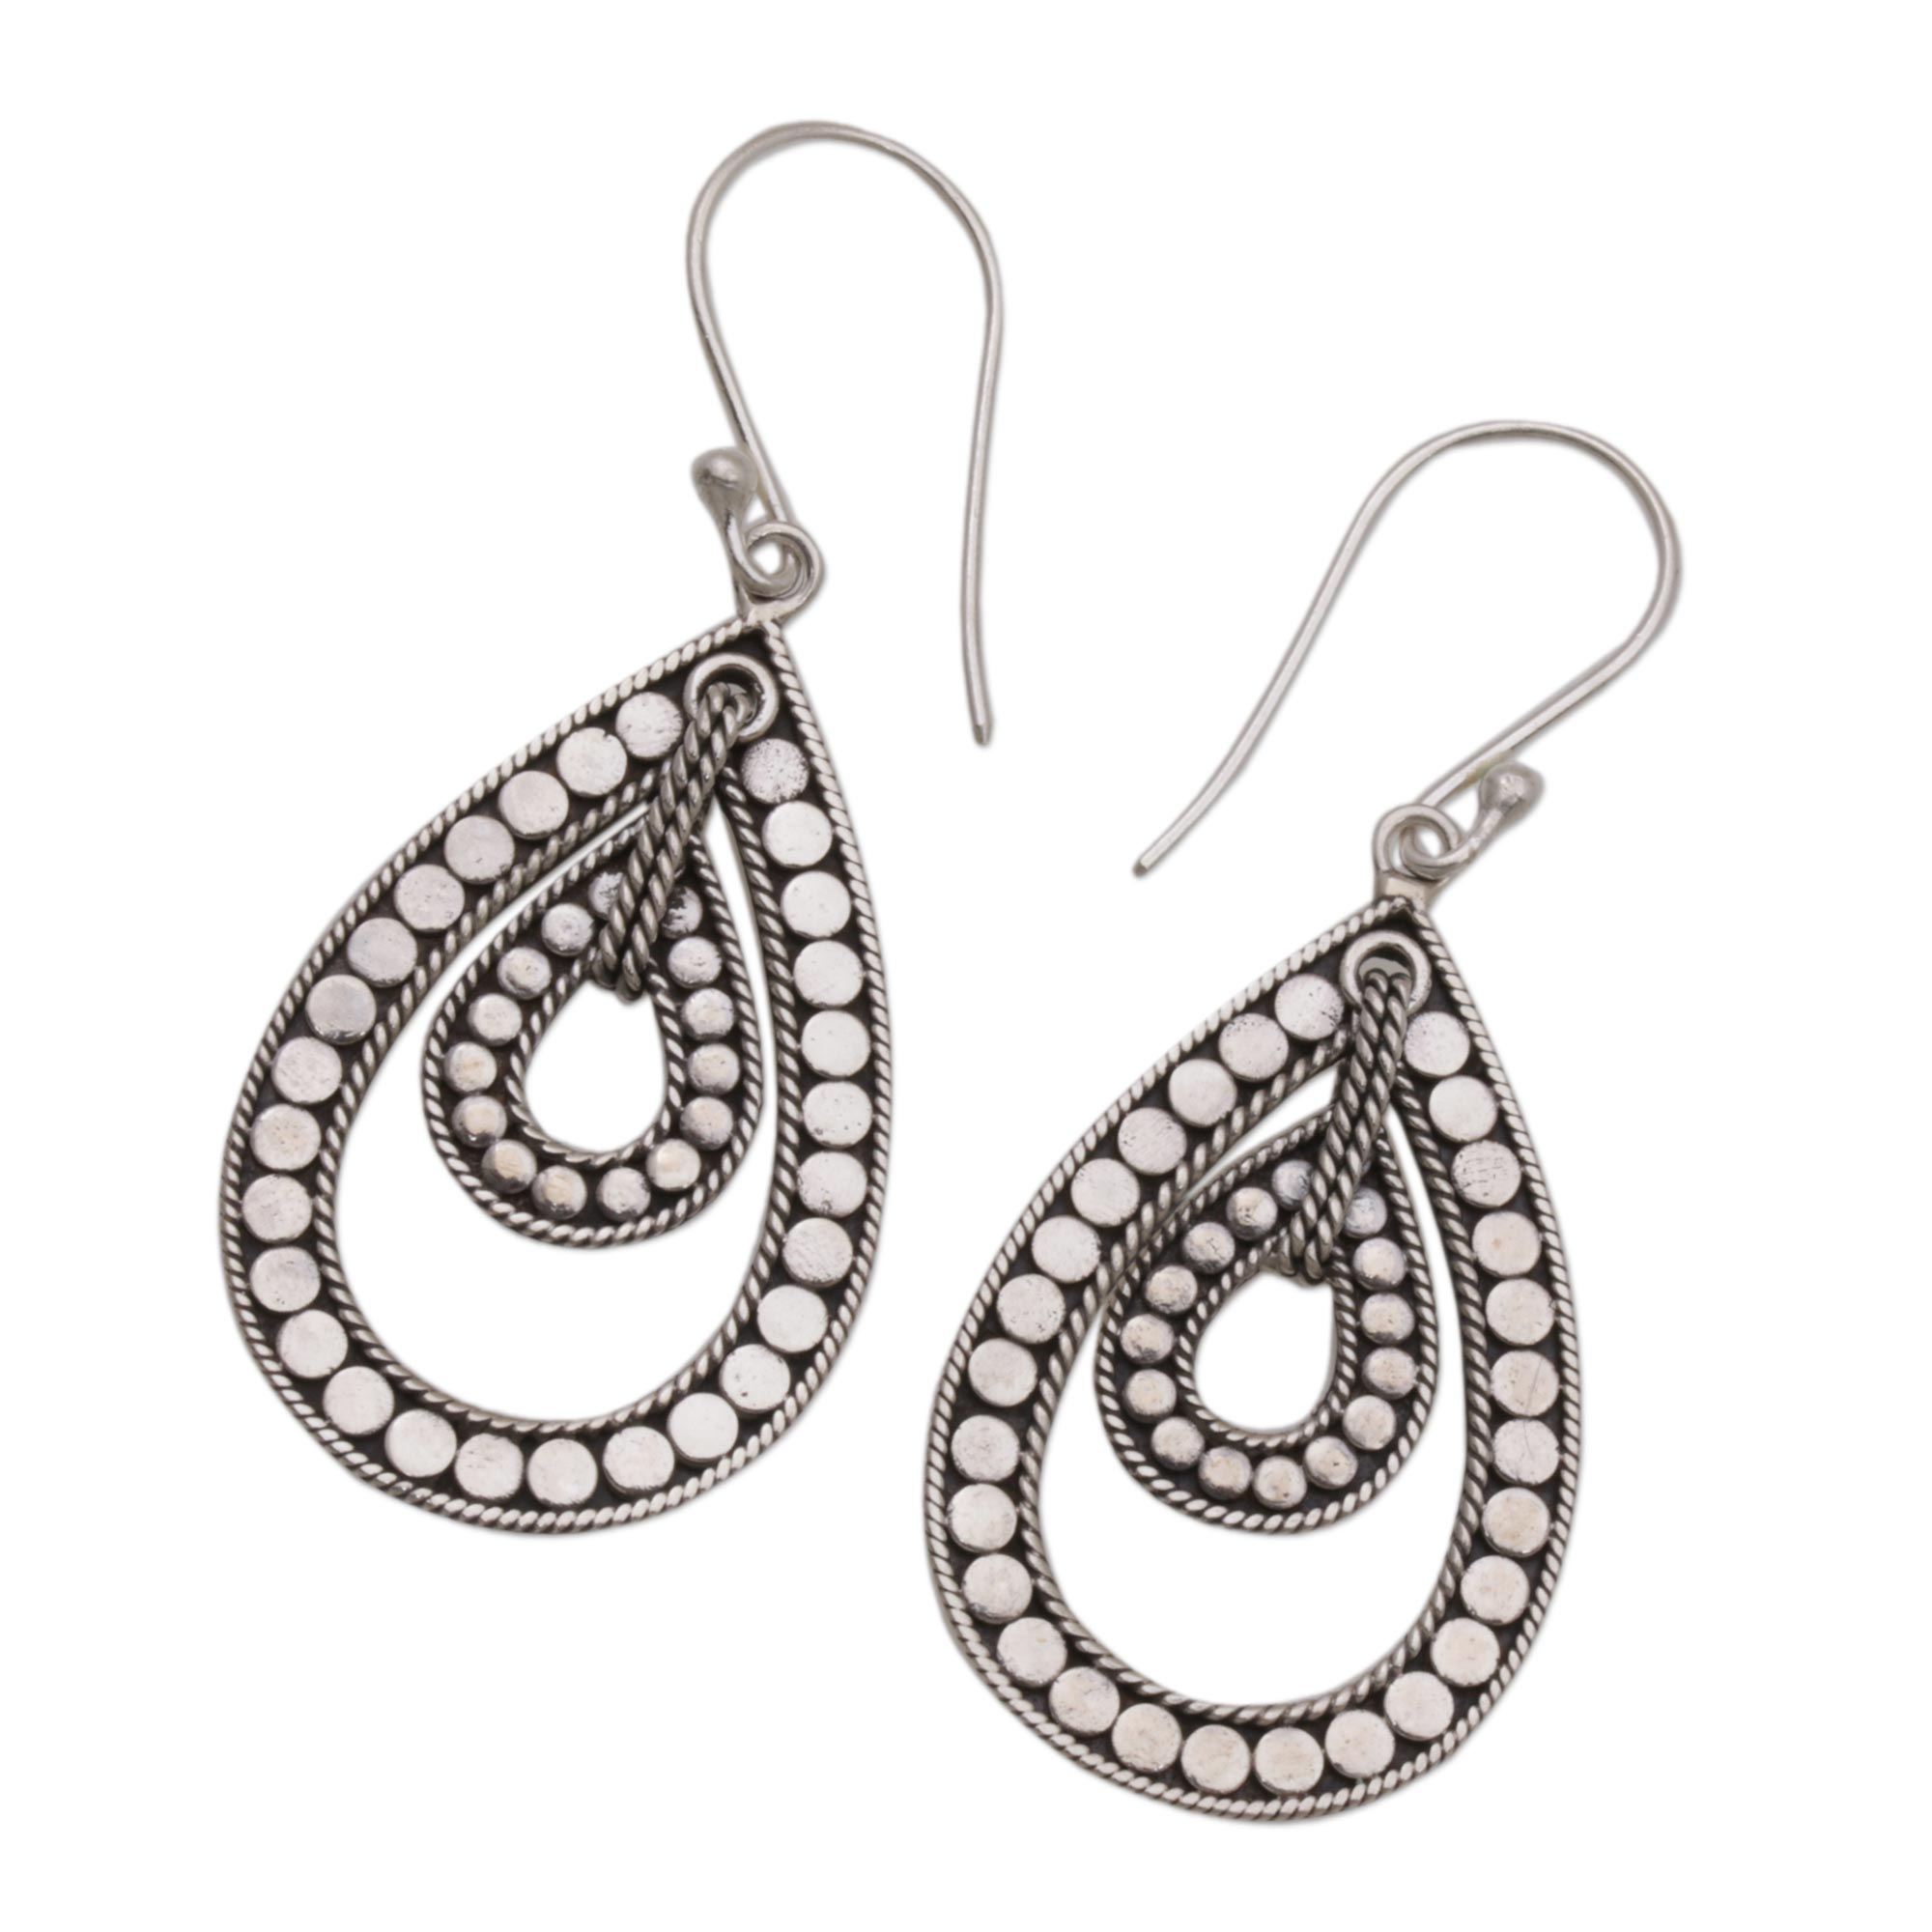 Sterling Silver Teardrop Dangle Earrings from Indonesia - Disco Lights ...